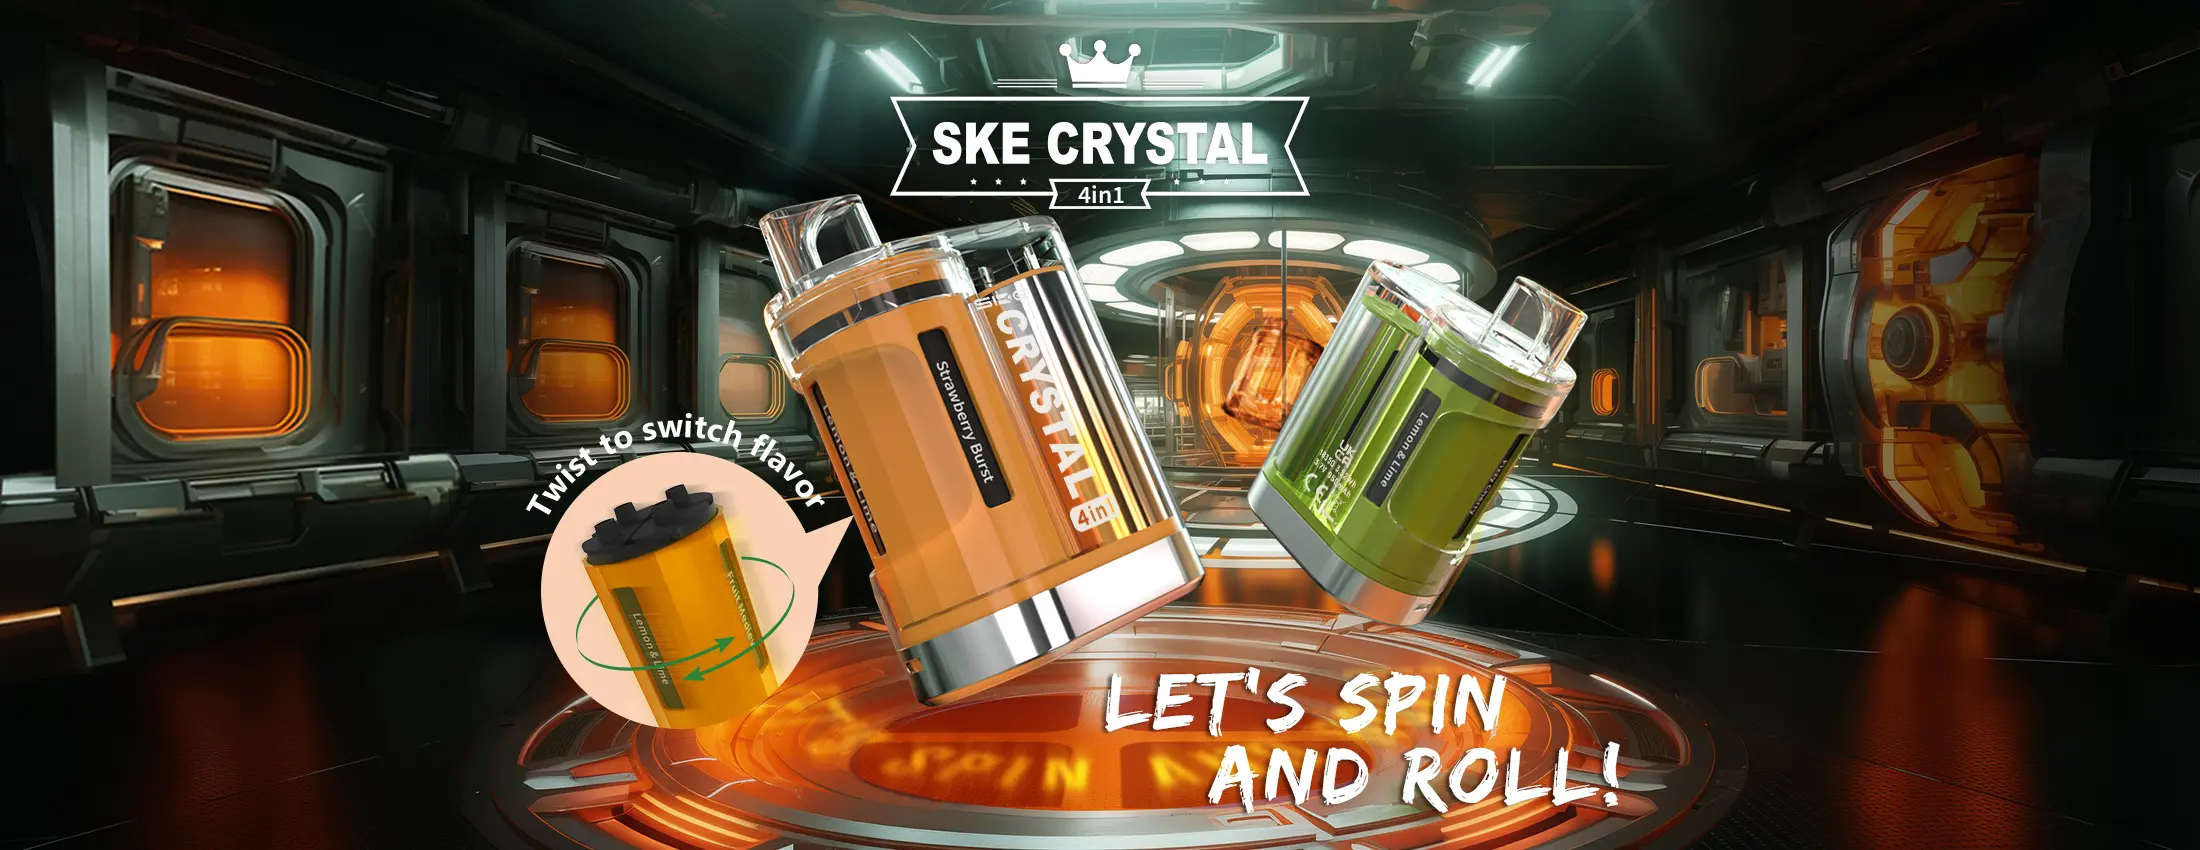 SKE Crystal 4in1